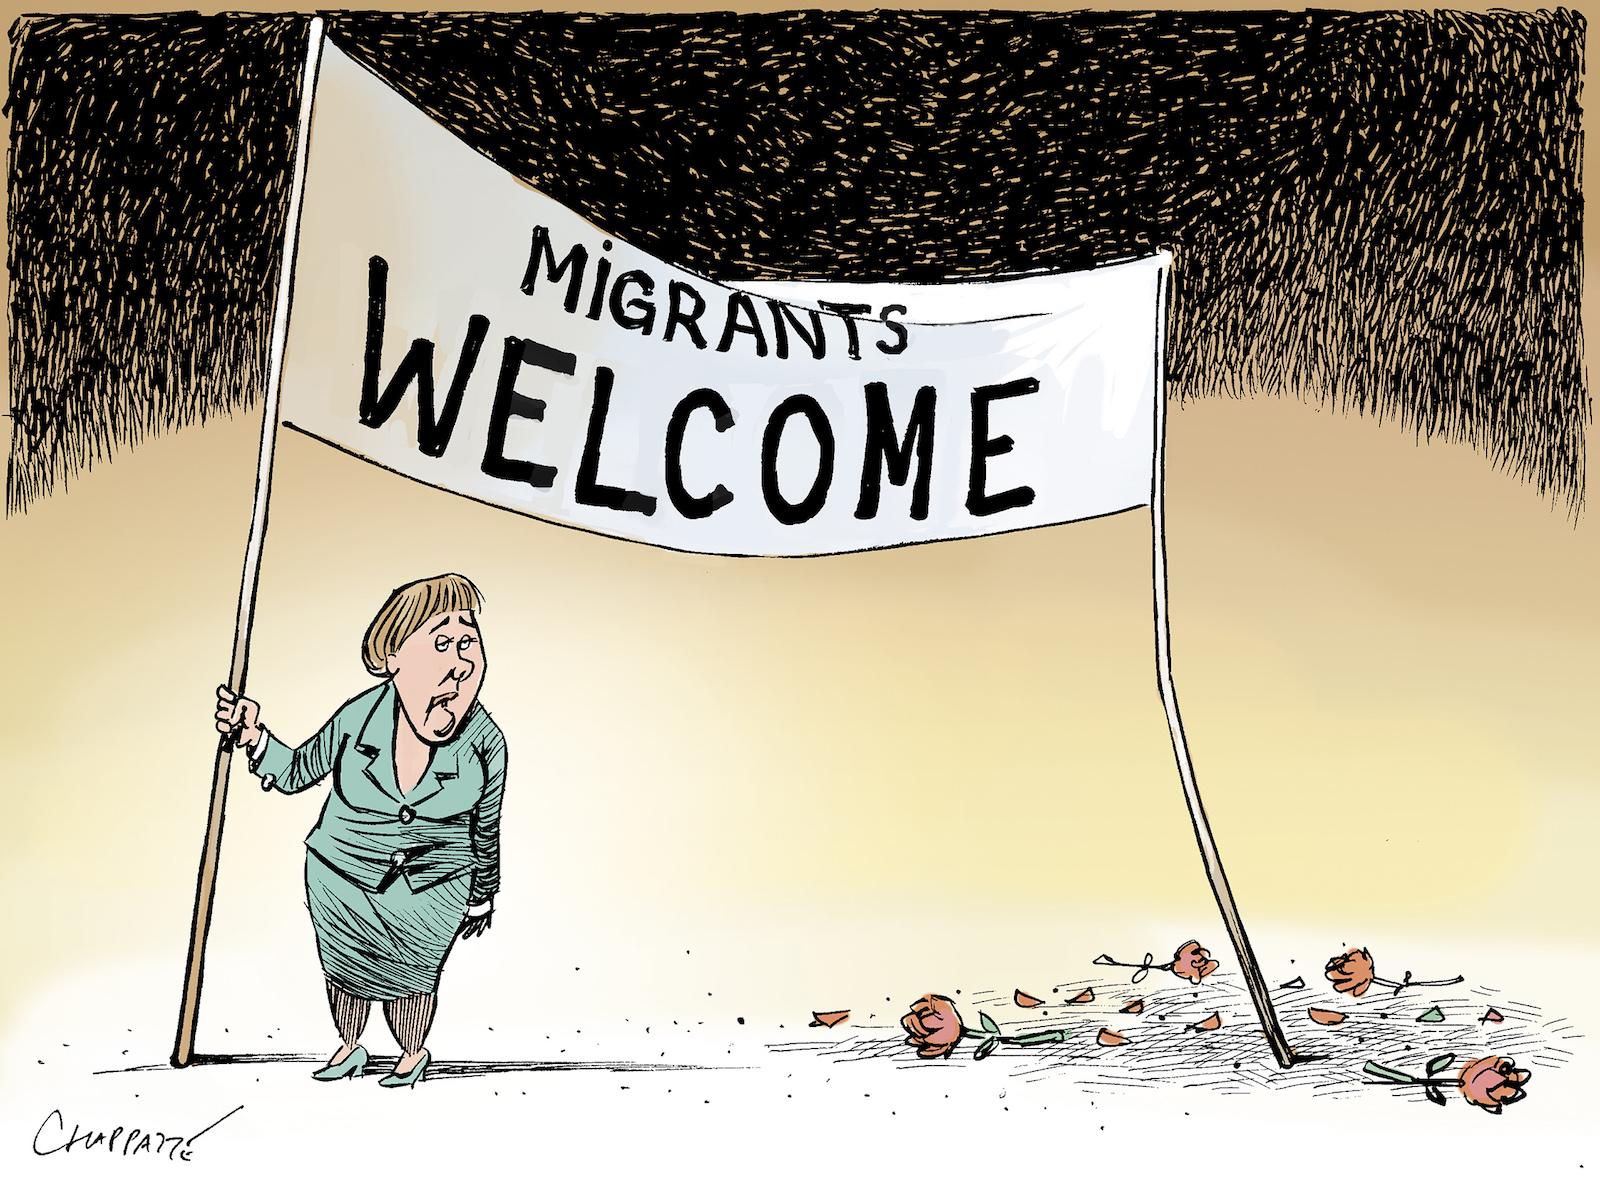 Anti-migrant backlash in Germany